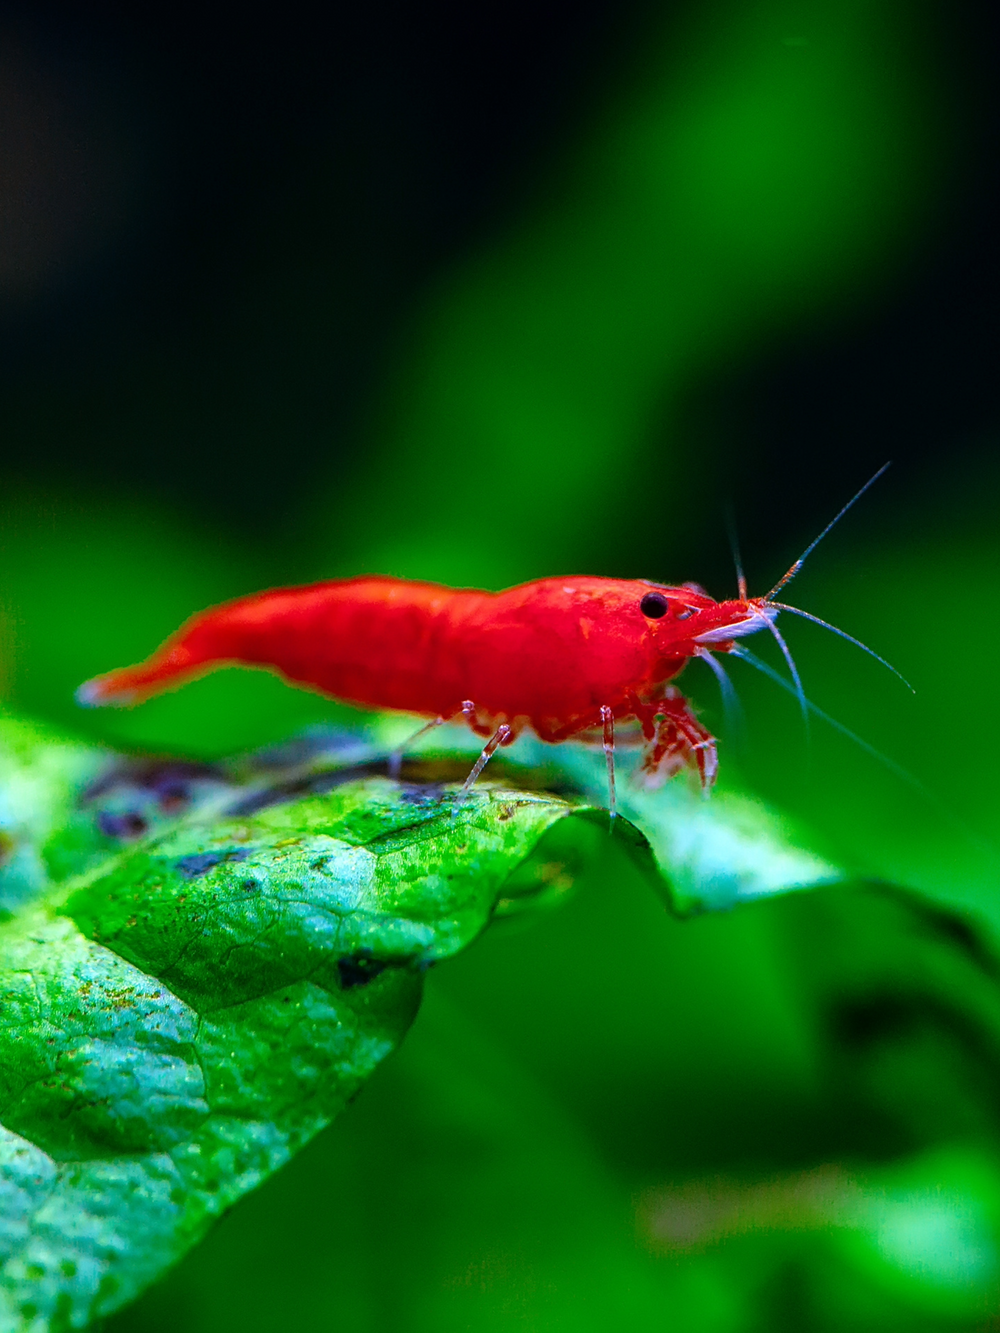 Red Fire Shrimp